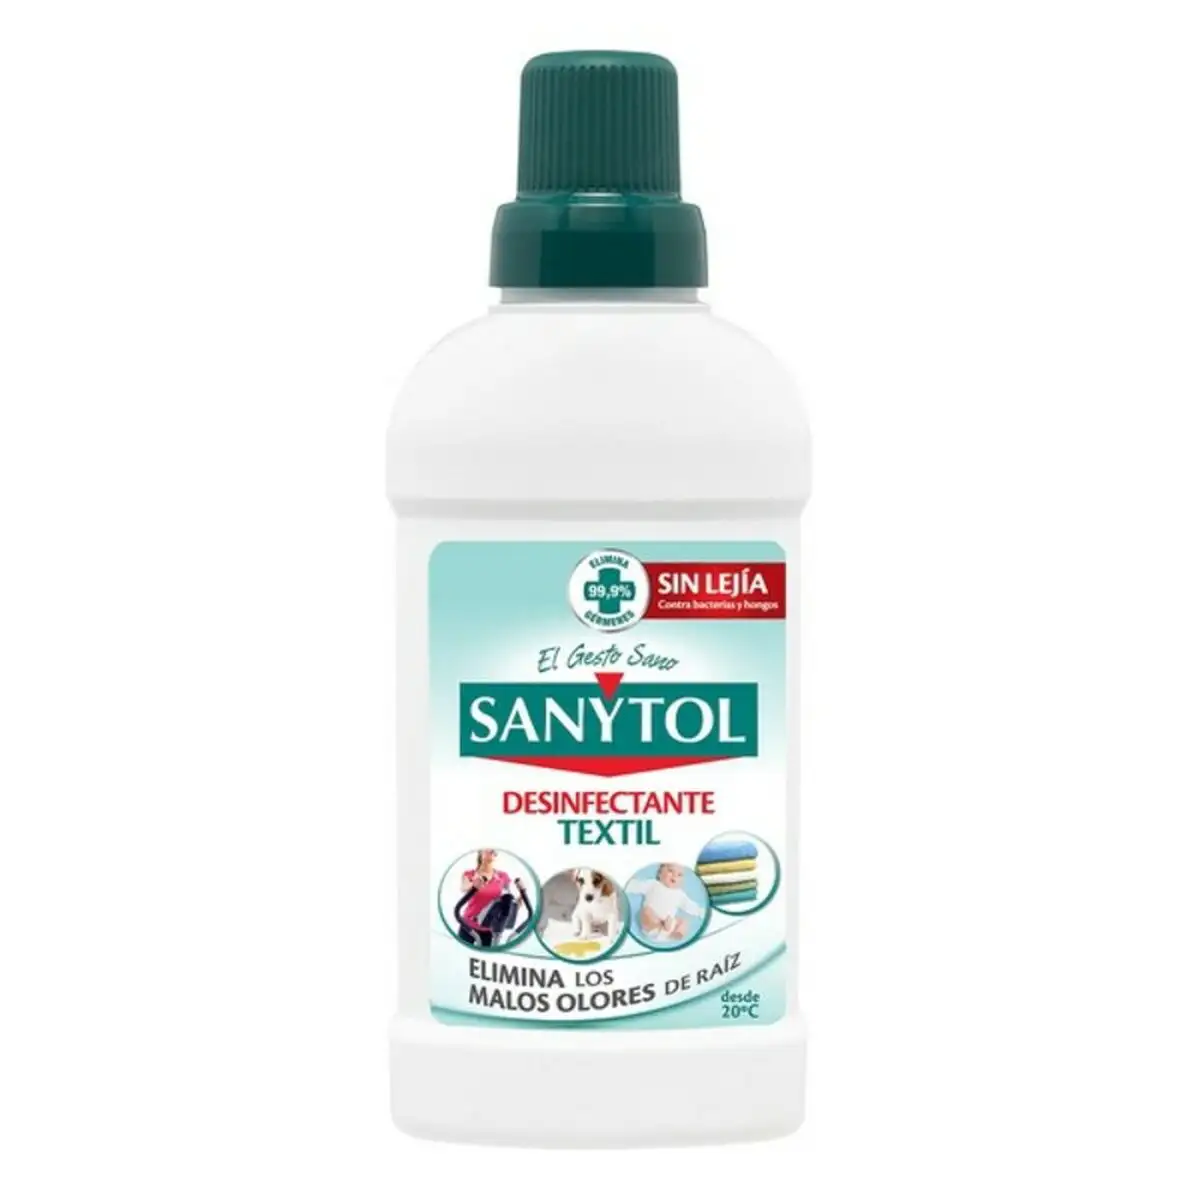 Desinfectant sanytol sanytol textile 500 ml_1402. DIAYTAR SENEGAL - Où Choisir Devient un Plaisir. Découvrez notre boutique en ligne et choisissez parmi une variété de produits qui satisferont tous vos besoins.